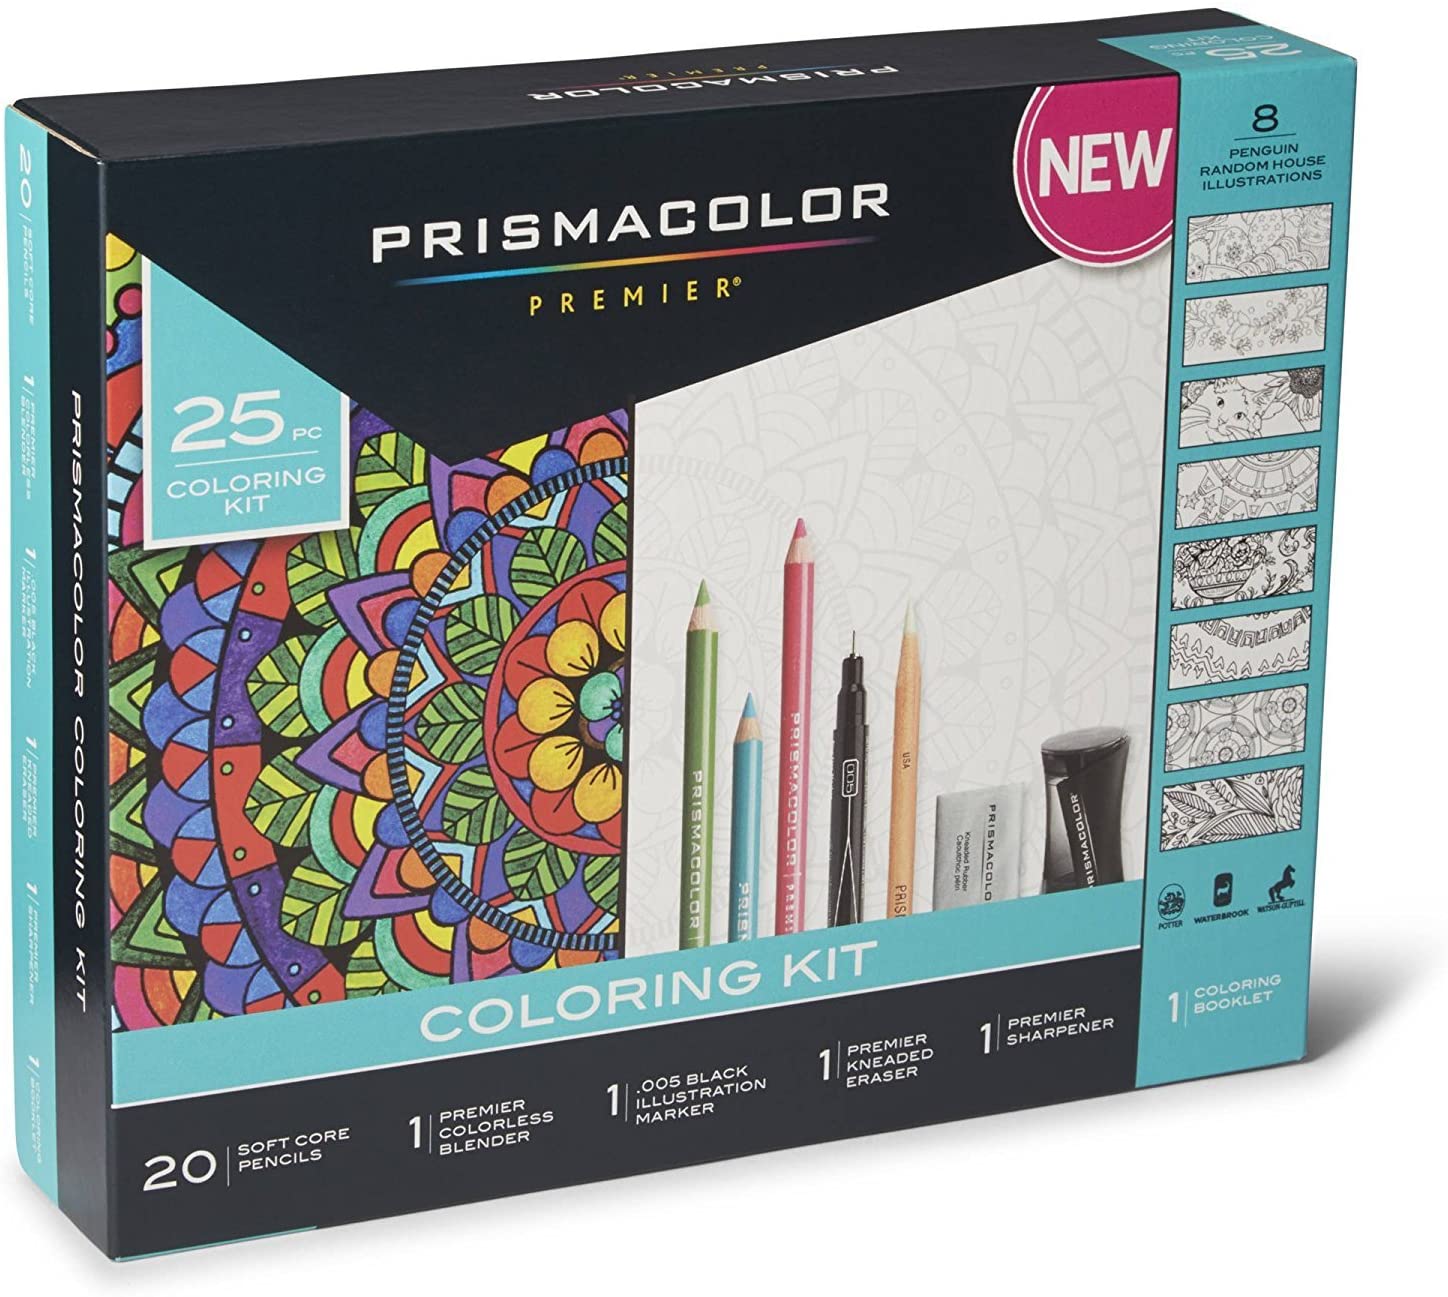 Prismacolor Premier Soft Core Pencils Adult Coloring Book Kit with Blender, Illustration Marker, Eraser, Sharpener and Coloring Booklet, 25 Pieces